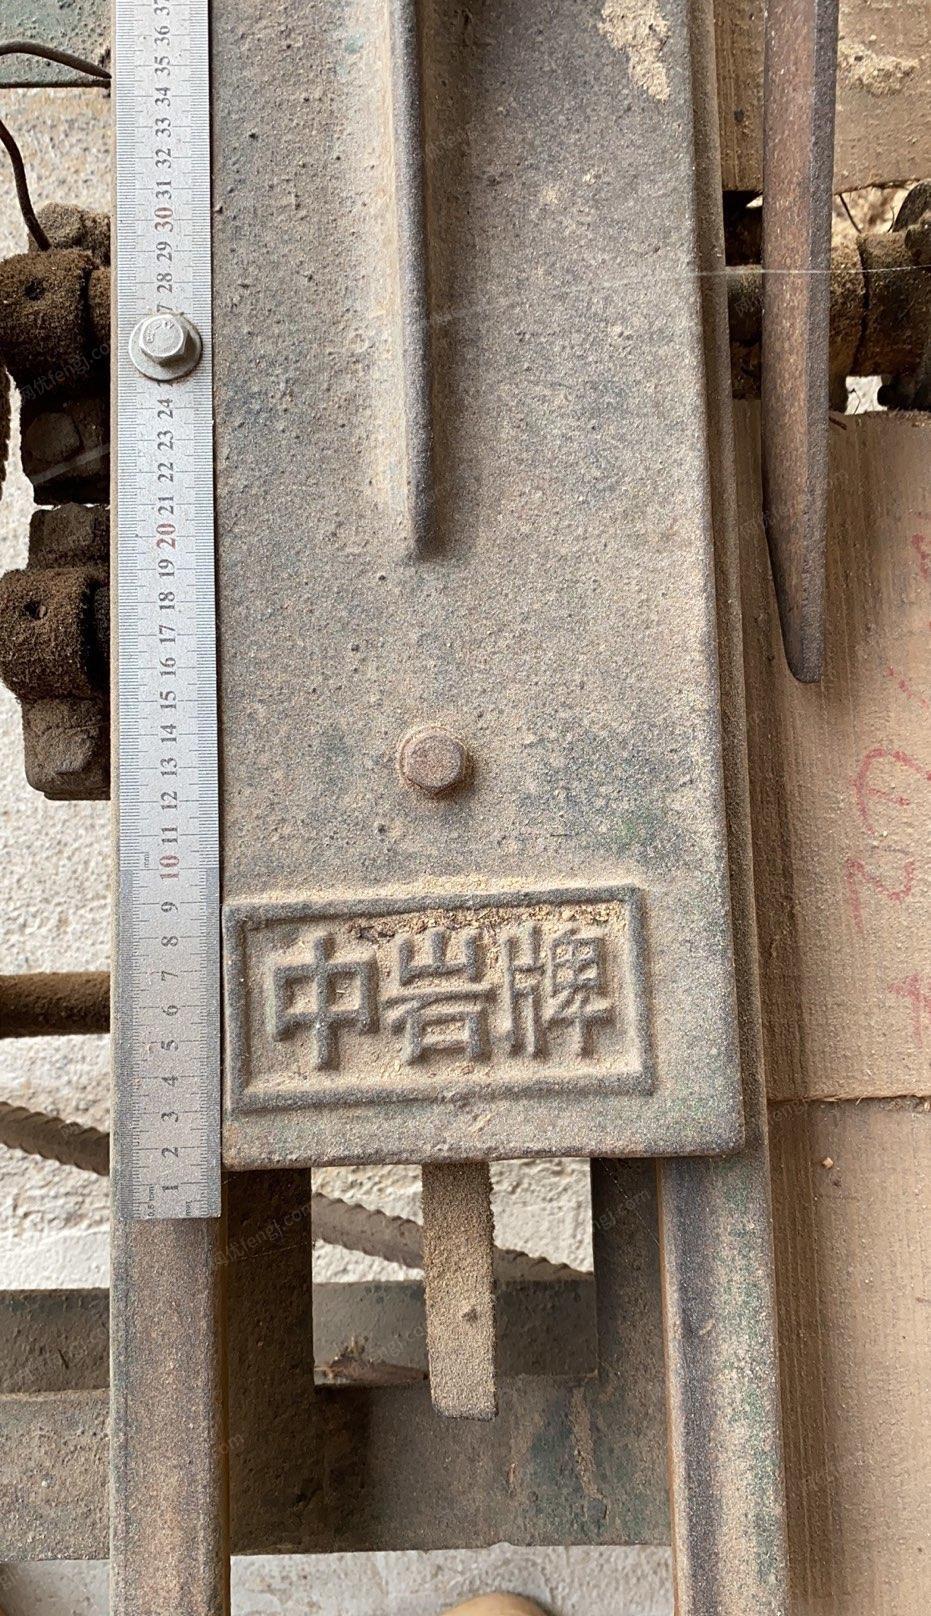 重庆江北区出售自己用的木工带锯，跑车，磨齿机全套